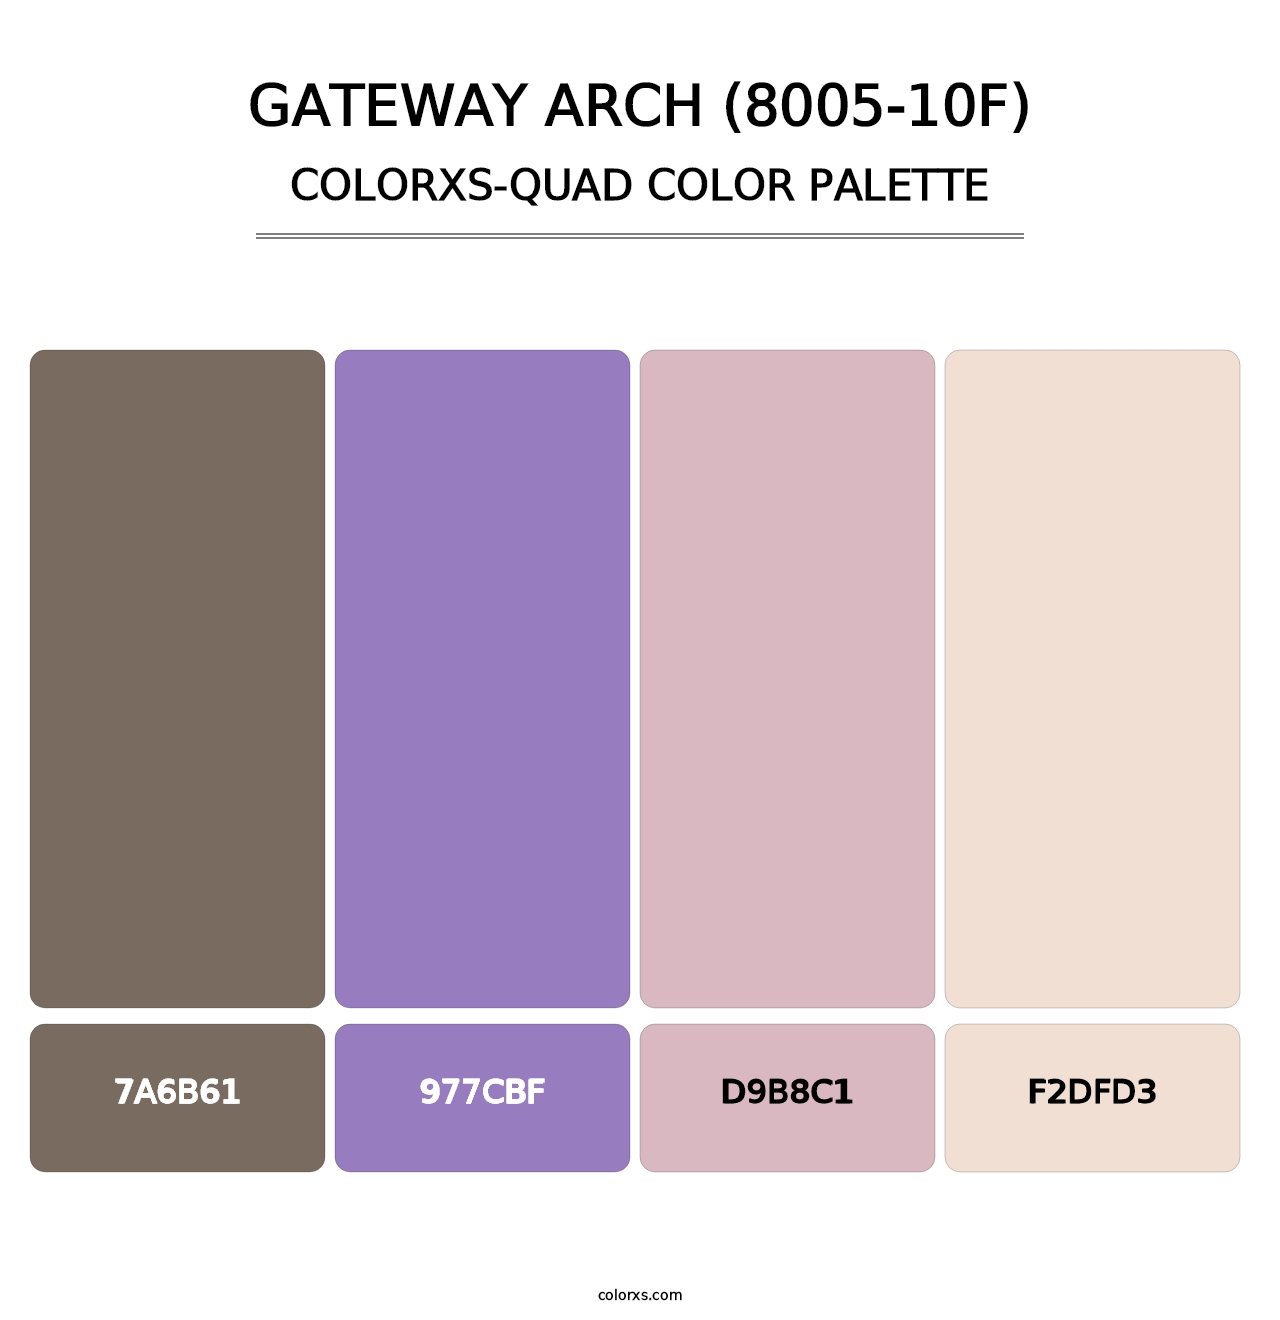 Gateway Arch (8005-10F) - Colorxs Quad Palette